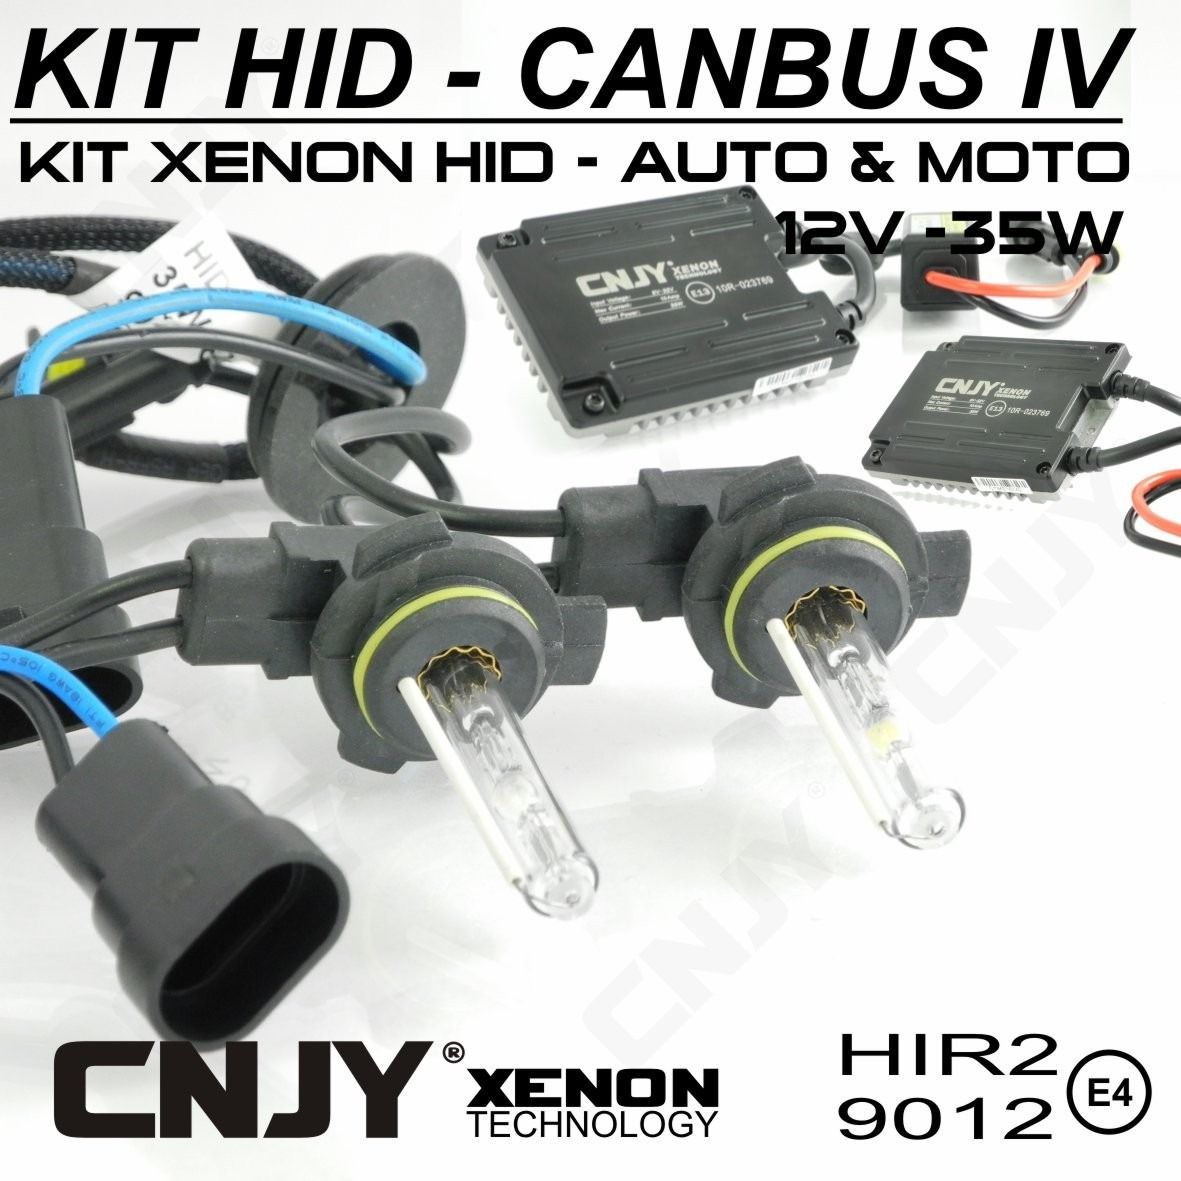 https://www.cnjy-led.fr/4150/kit-xenon-hid-hir2-9012-pour-toyota-yaris-hybride-ampoule-ballast-35w-ou-55w-slim-canbus4-technologie-anti-erreur-odb-2015-.jpg